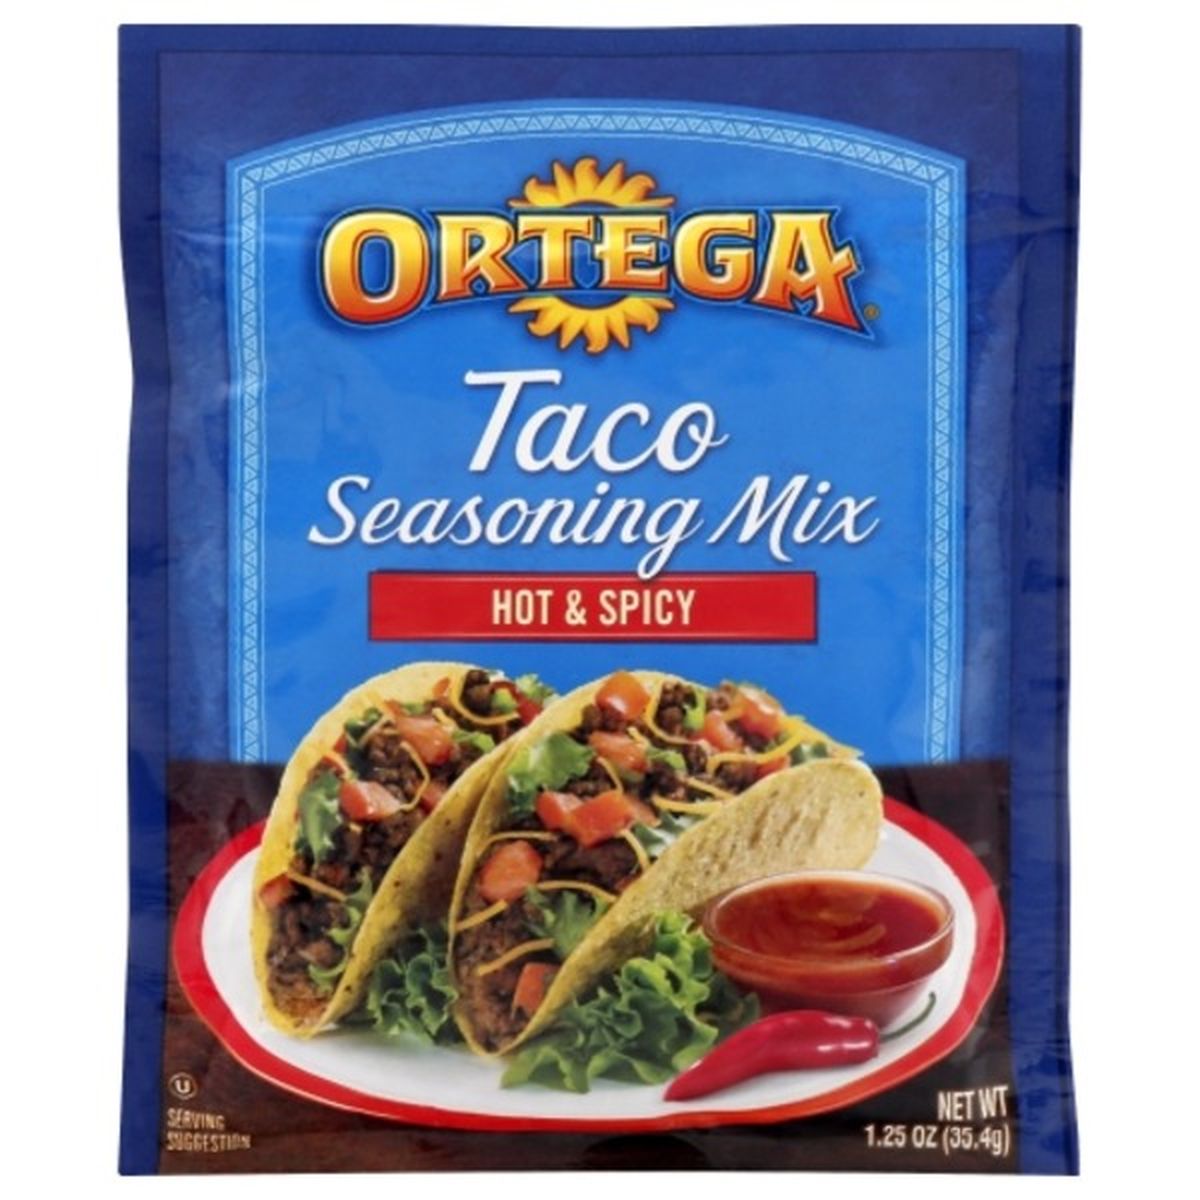 Calories in Ortega Seasoning Mix, Taco, Hot & Spicy